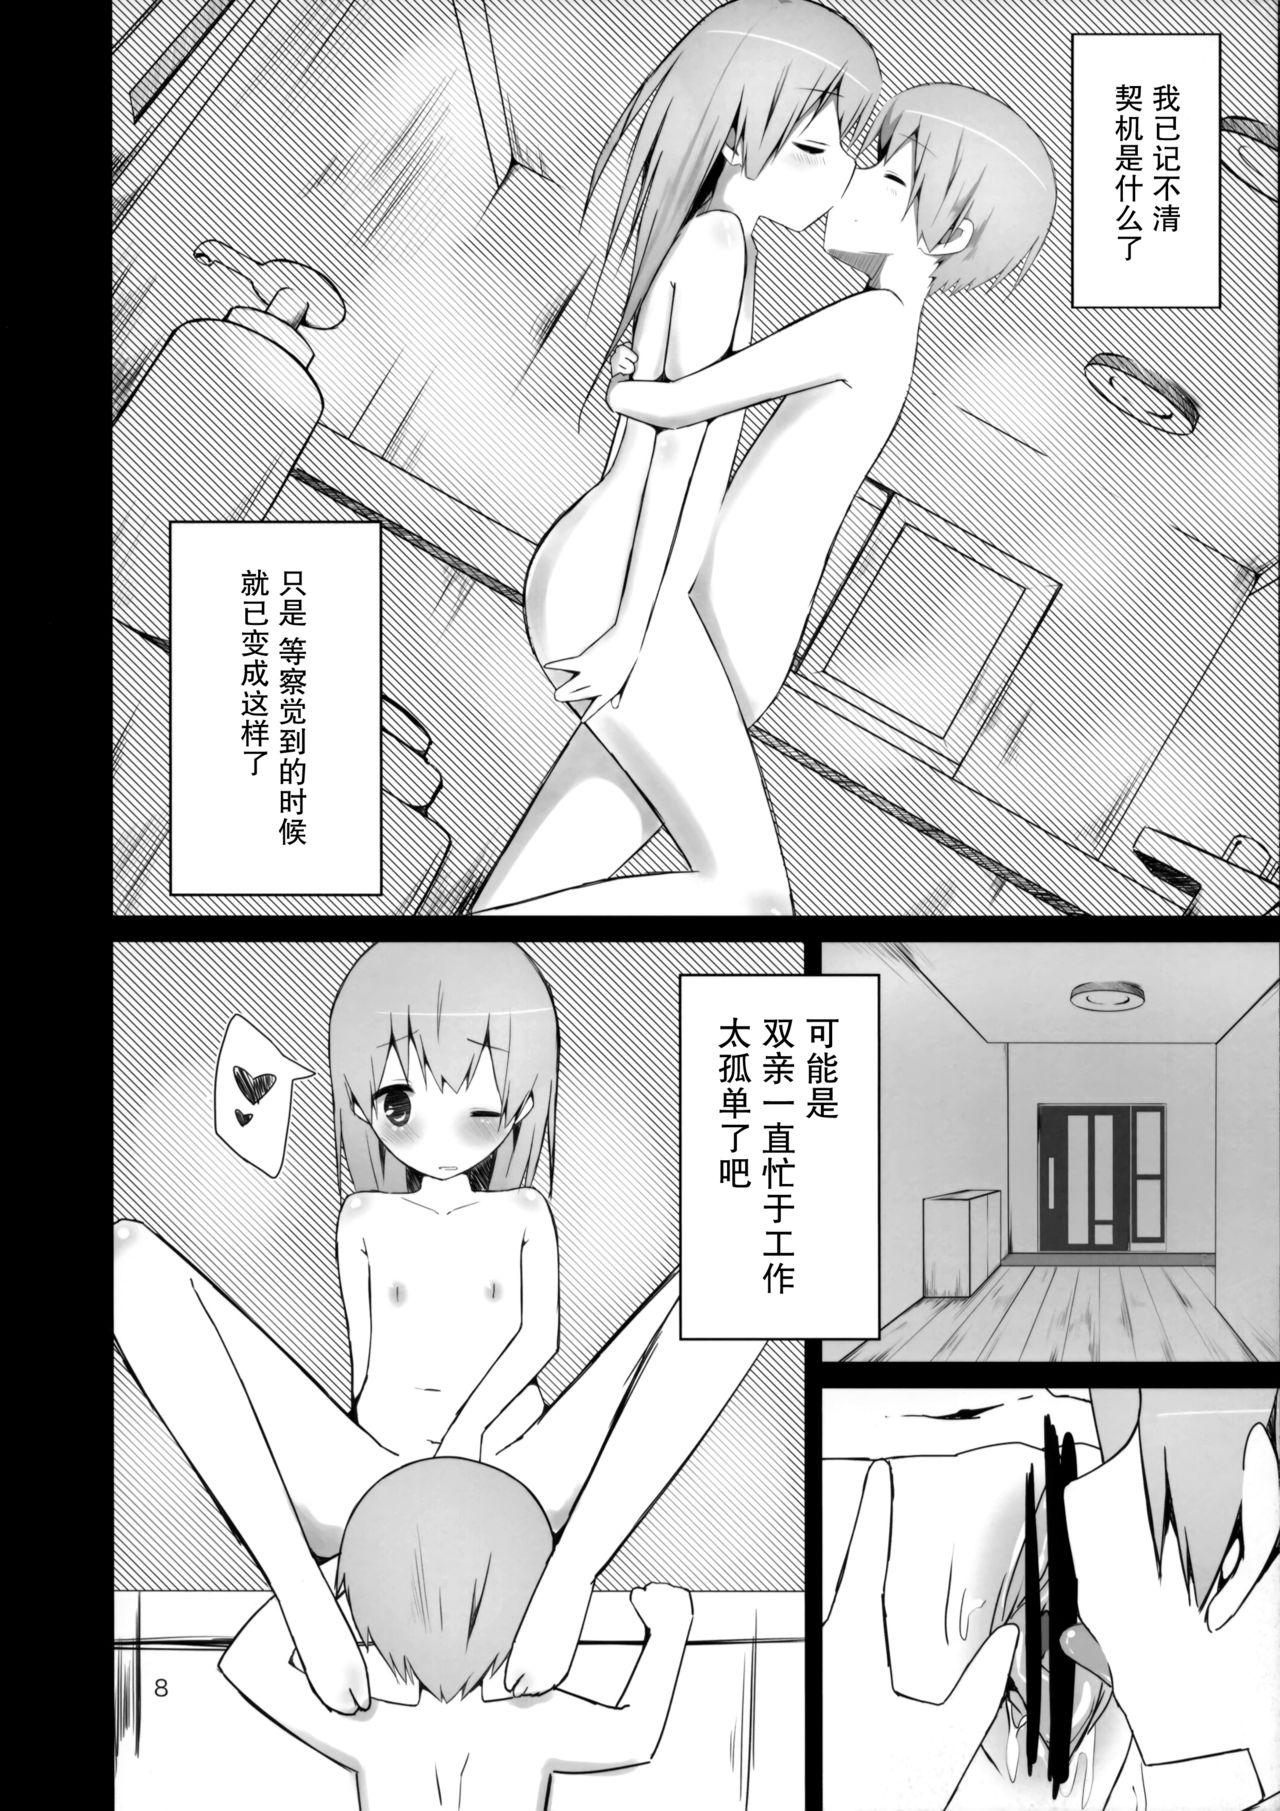 Exgirlfriend Watashi ni wa Futago no Ani ga Orimashite. - Original Guy - Page 8